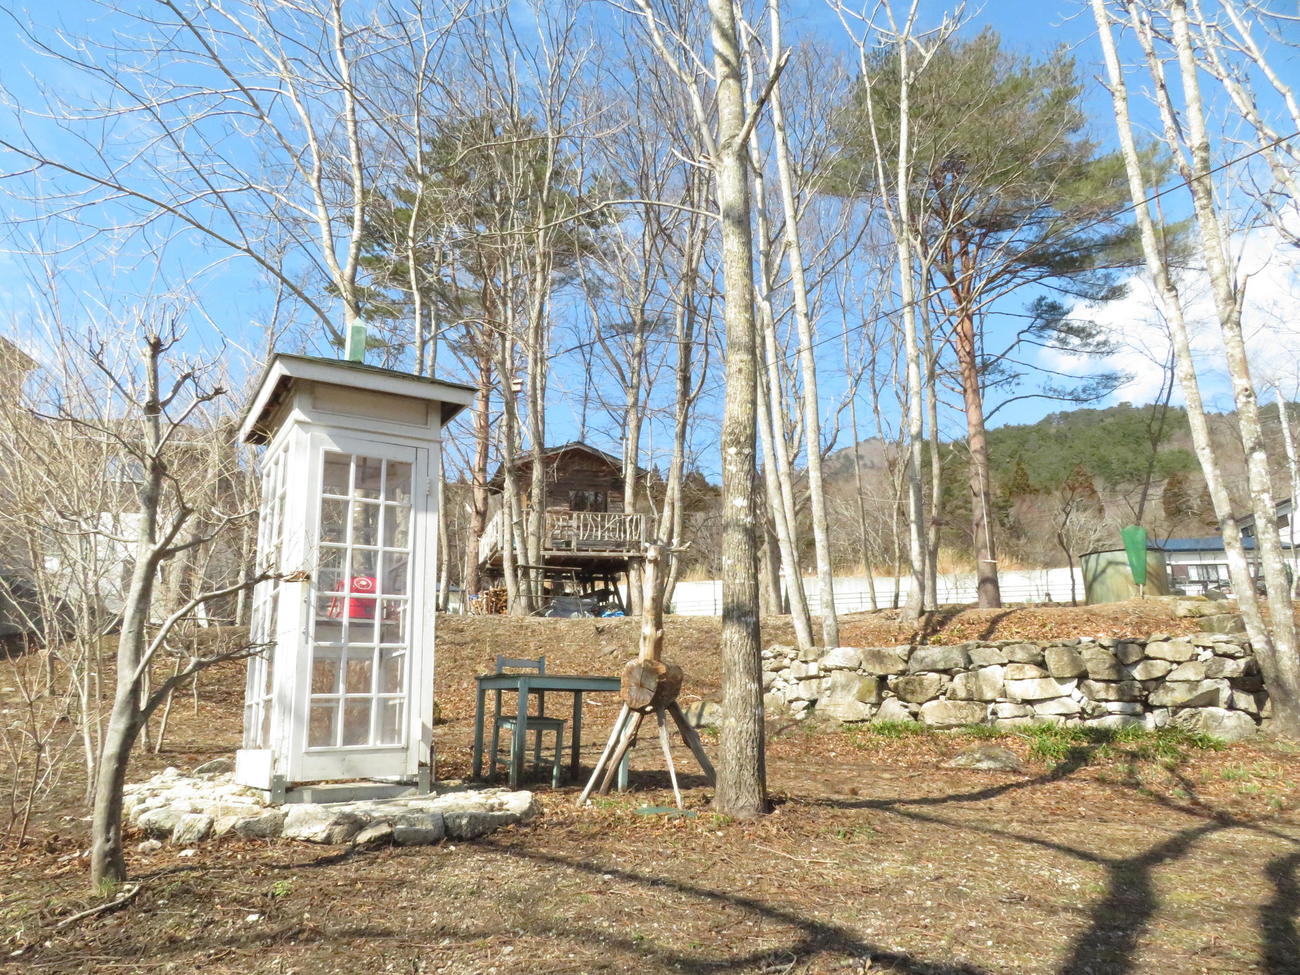 庭園内には「風の電話」以外に、小動物専用の電話ボックスもある。奄美大島から届いた赤電話が置かれている（撮影・近藤由美子）